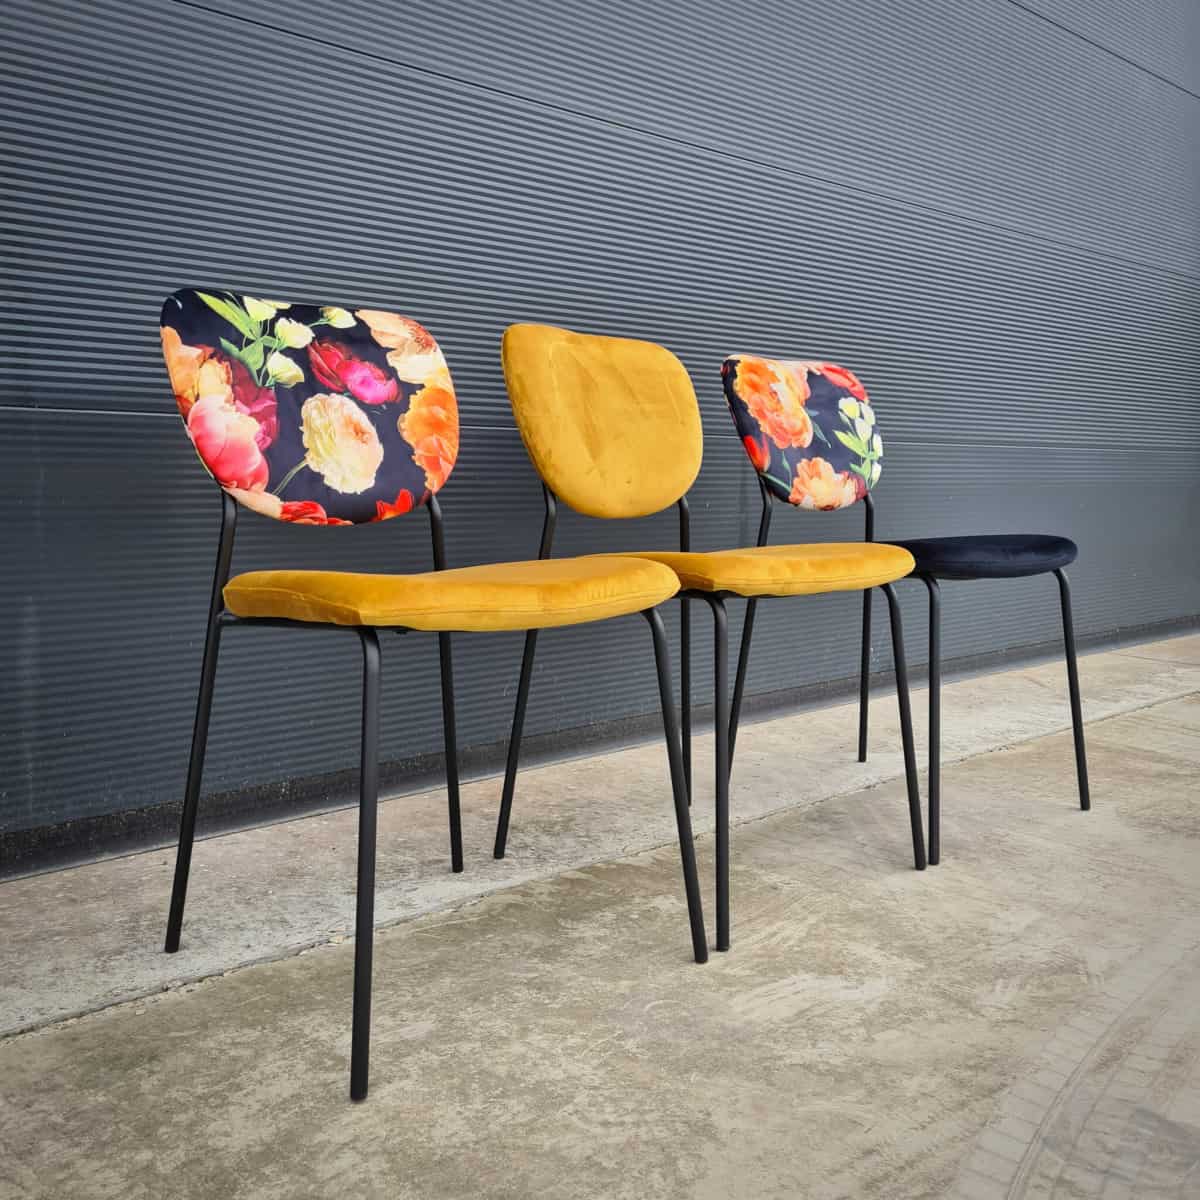 kwartaal voor mij Vulkanisch Jazz retro horeca design stoelen oker geel - Super Seat